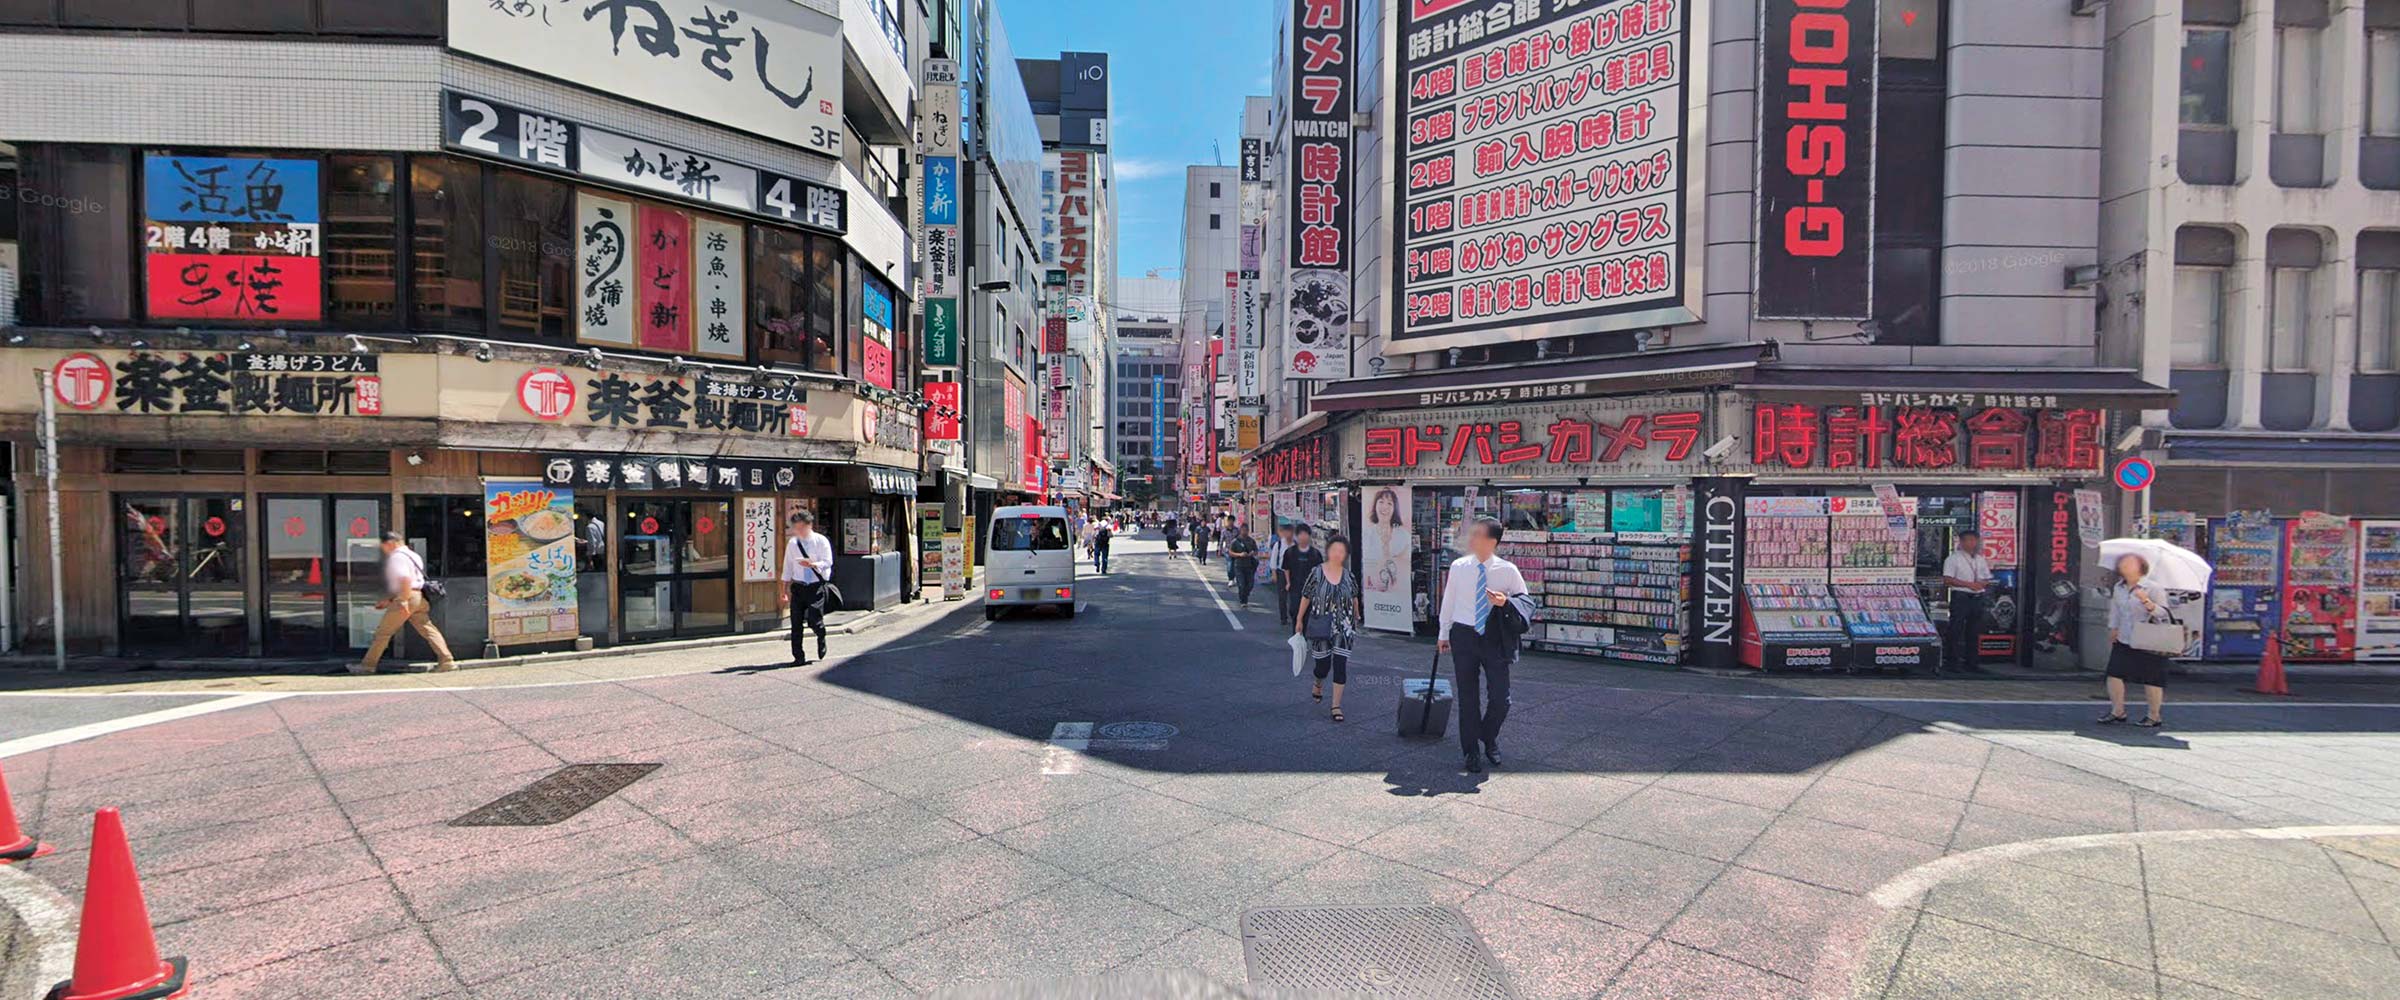 Tokyo, Japan / Image © 2019 Google Street View